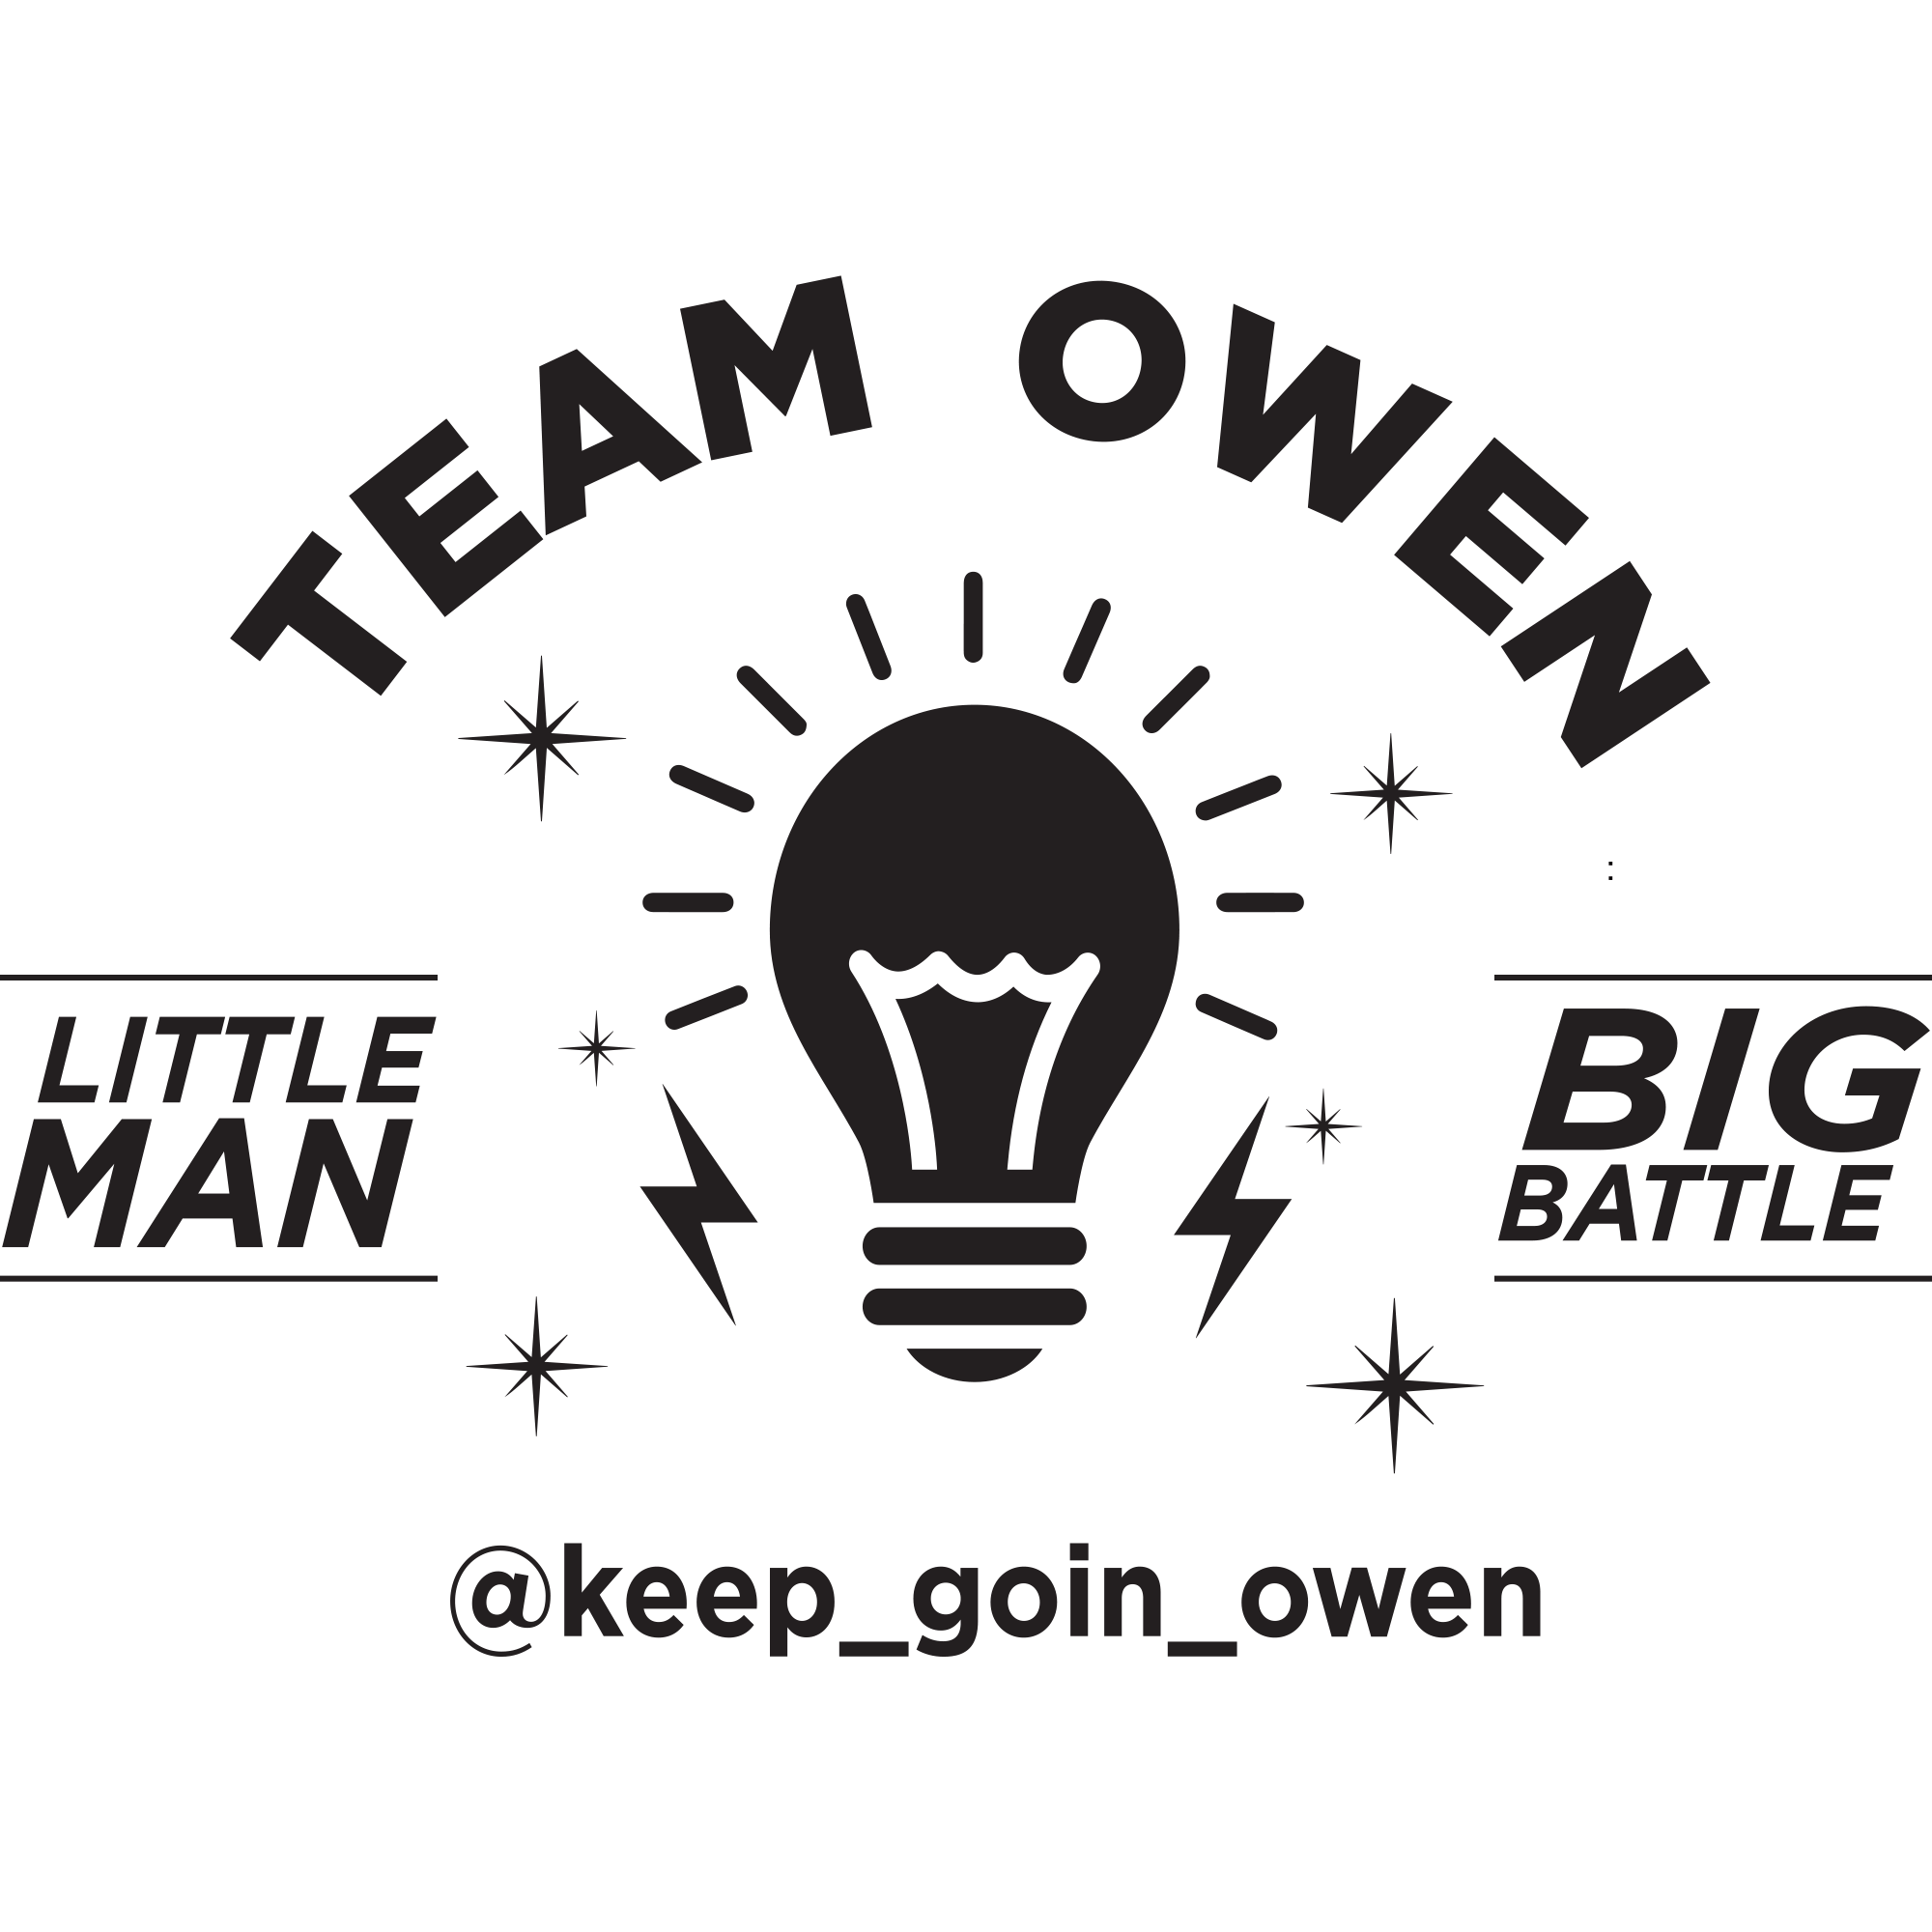 Team Owen